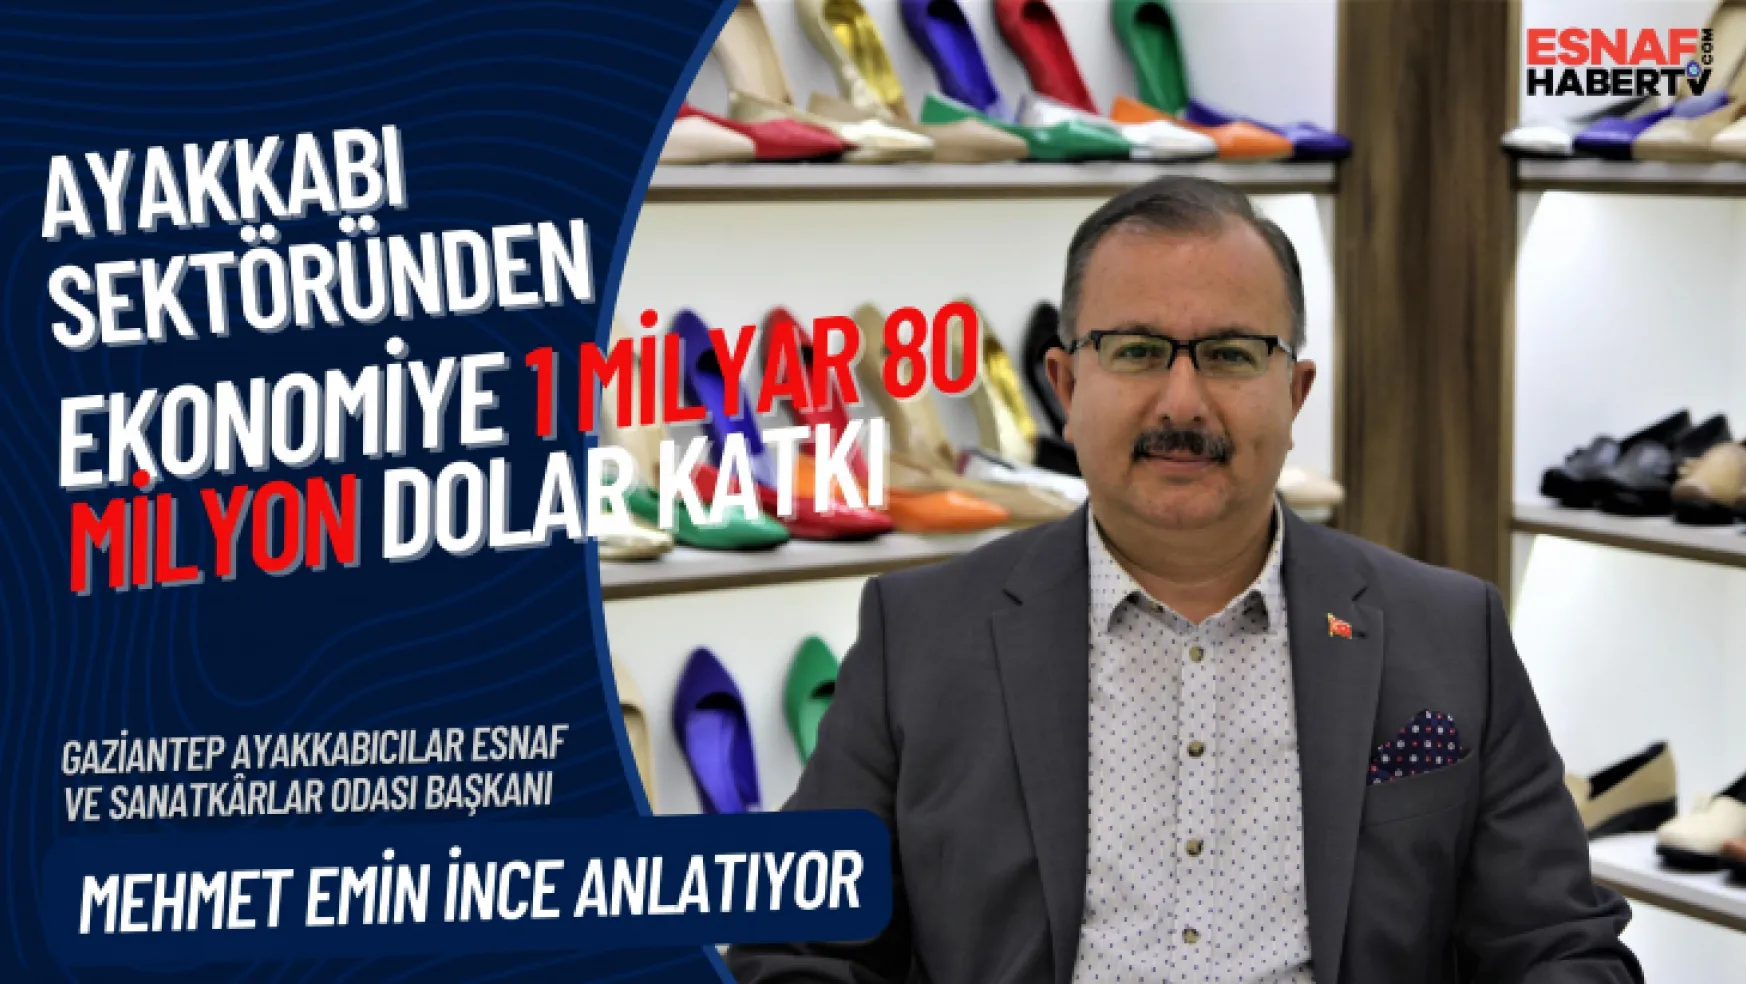 Mehmet Emin İnce: Ayakkabı sektörü altın çağını yaşıyor